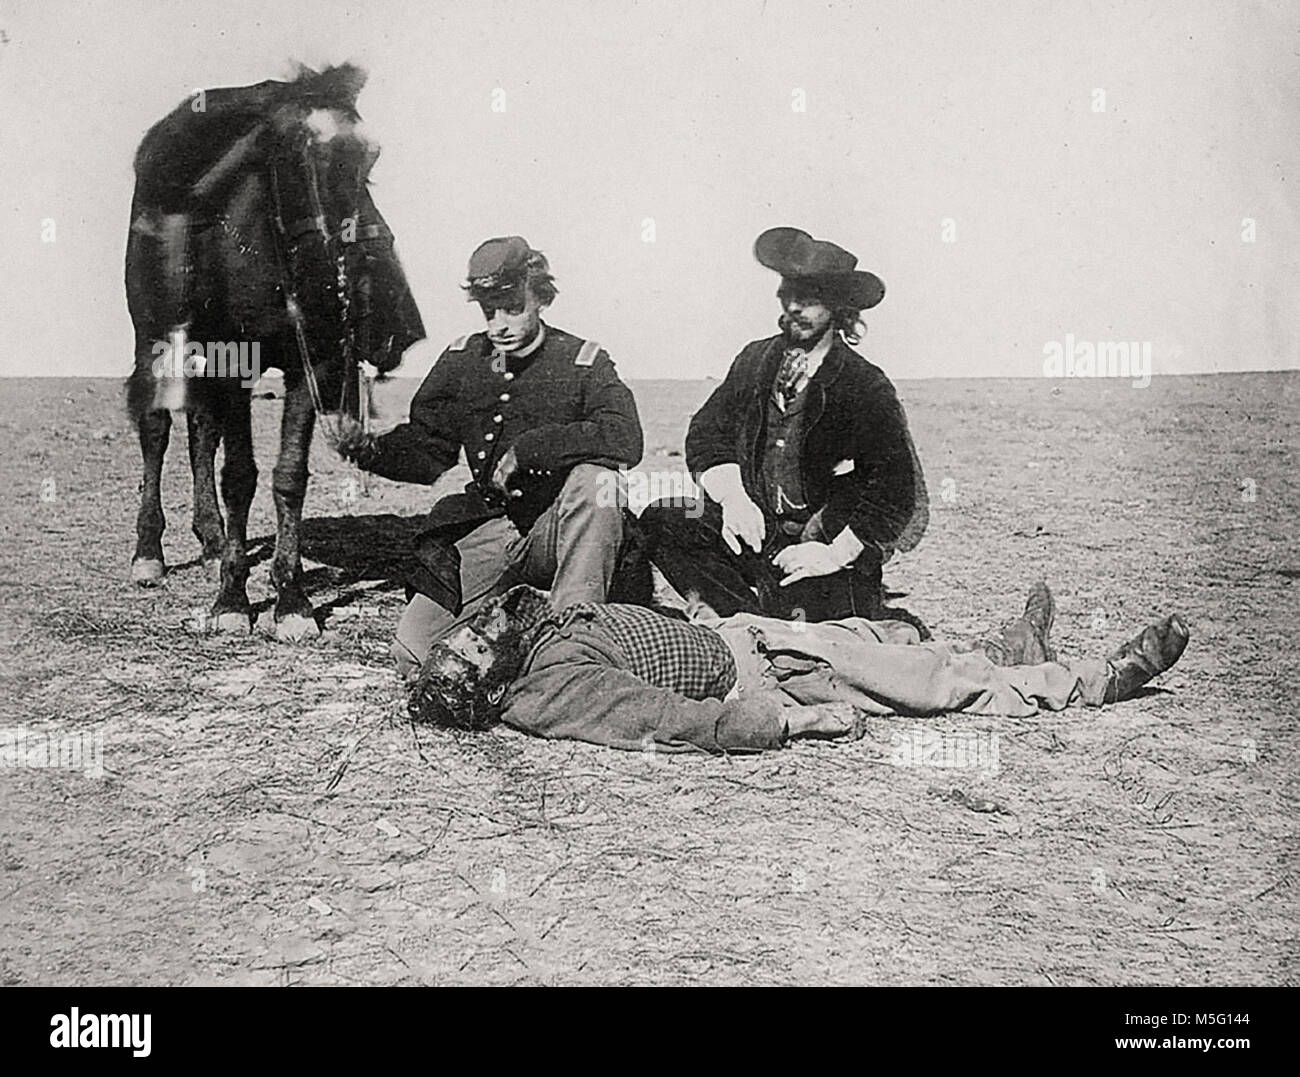 Cazador de búfalos Ralph Morrison, muertos y rapado por Cheyennes en diciembre de 1868, cerca de Fort Dodge, Kansas; Teniente Leer en uniforme militar y John O. Austin y caballo cerca Foto de stock